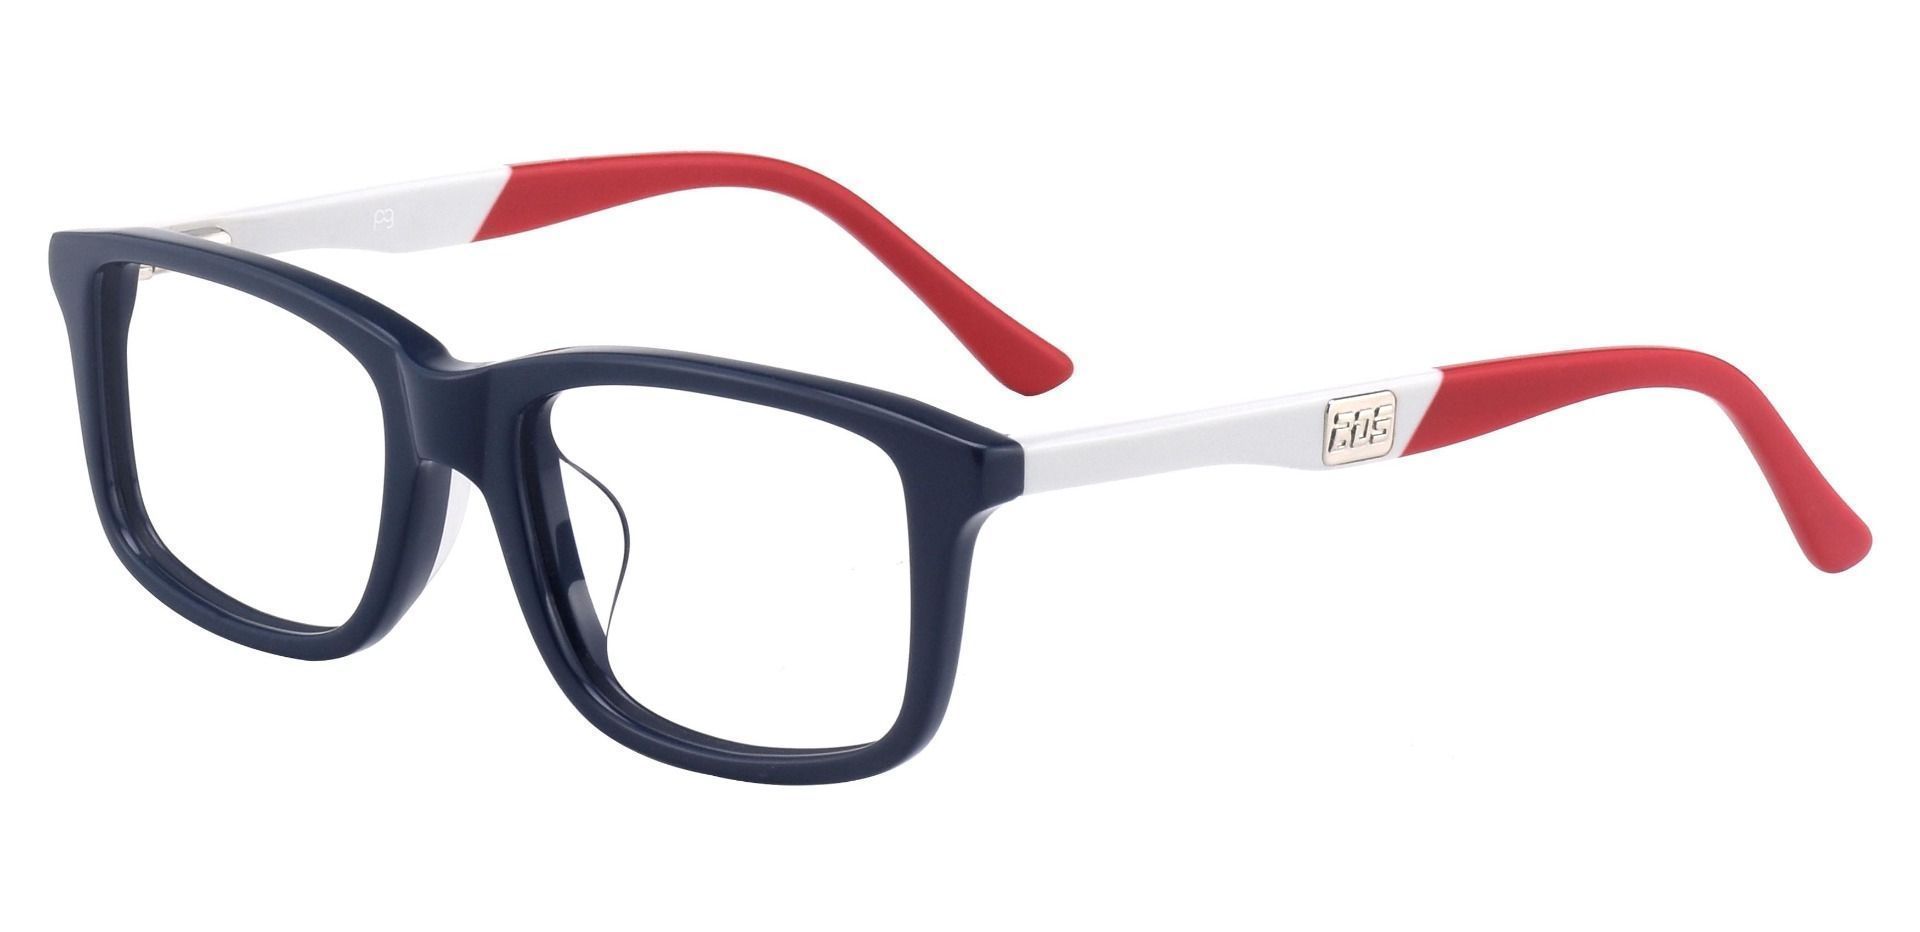 Hub Rectangle Eyeglasses Frame - Blue White Red